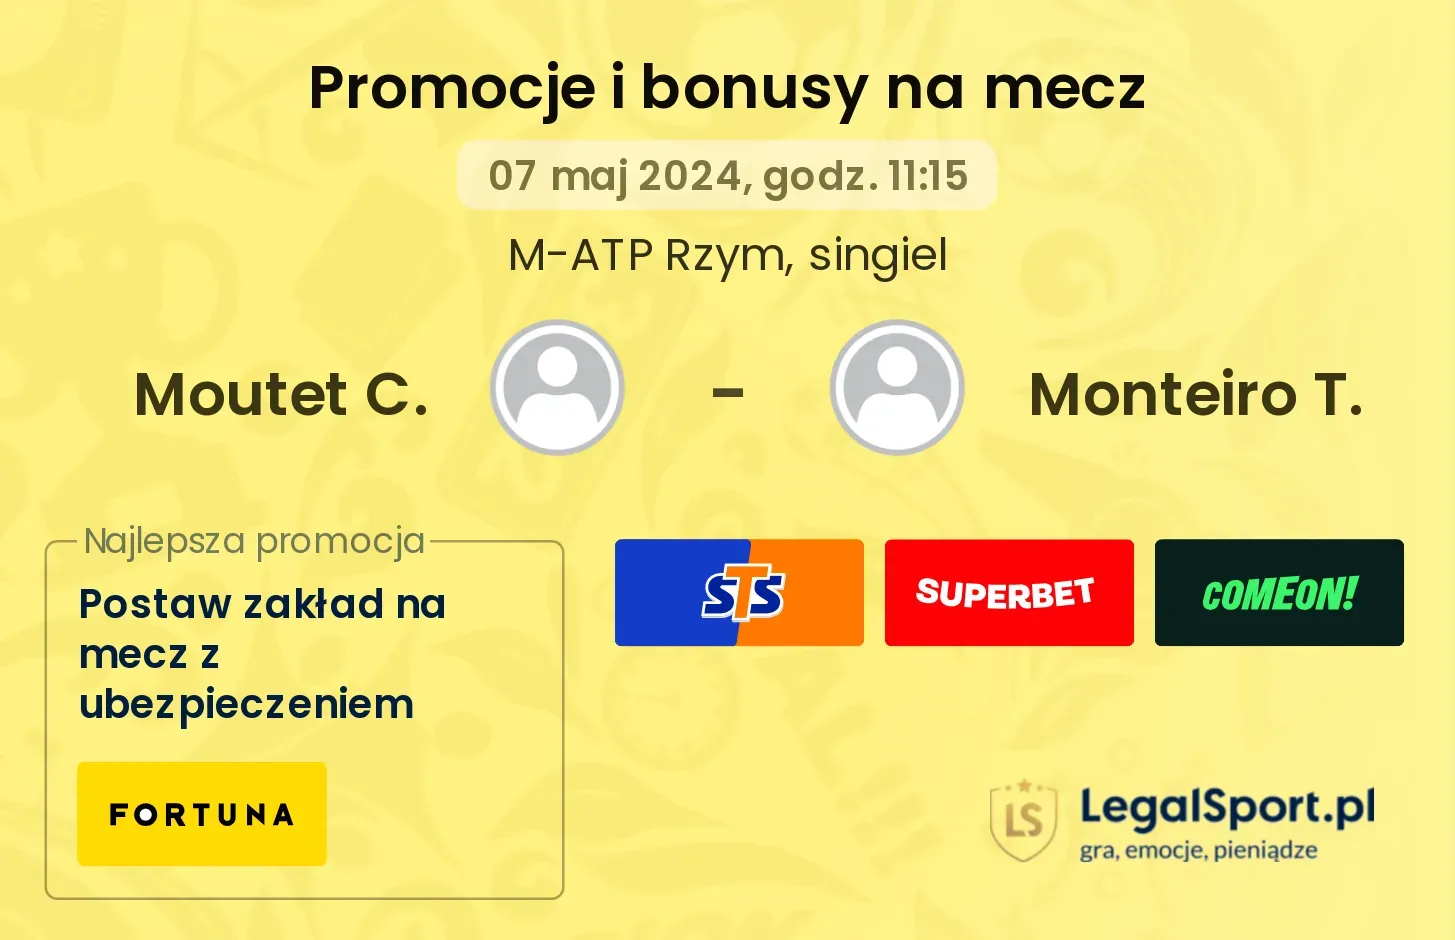 Moutet C. - Monteiro T. promocje bonusy na mecz